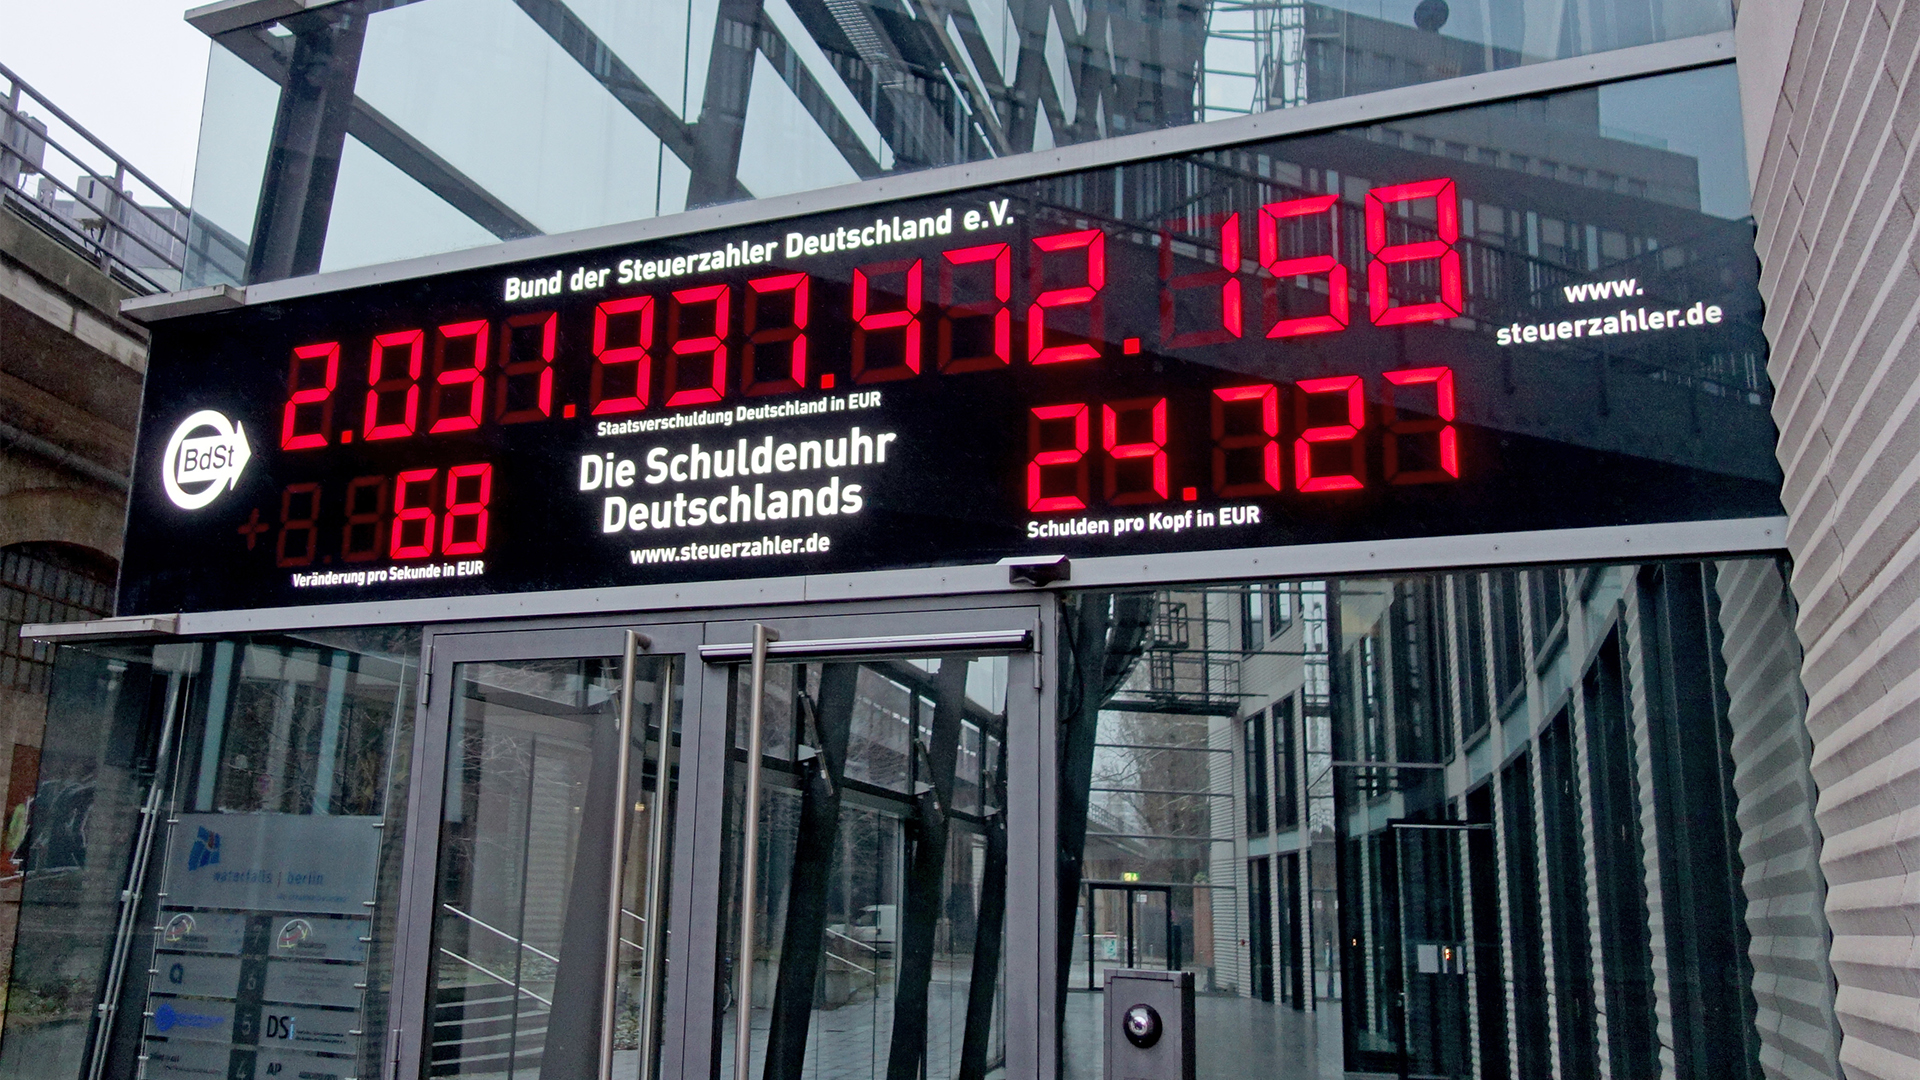 Das Foto zeigt die Schuldenuhr am neuen Standort des Bundes der Steuerzahler Deutschland in Berlin.  | picture alliance / Bund der Steu